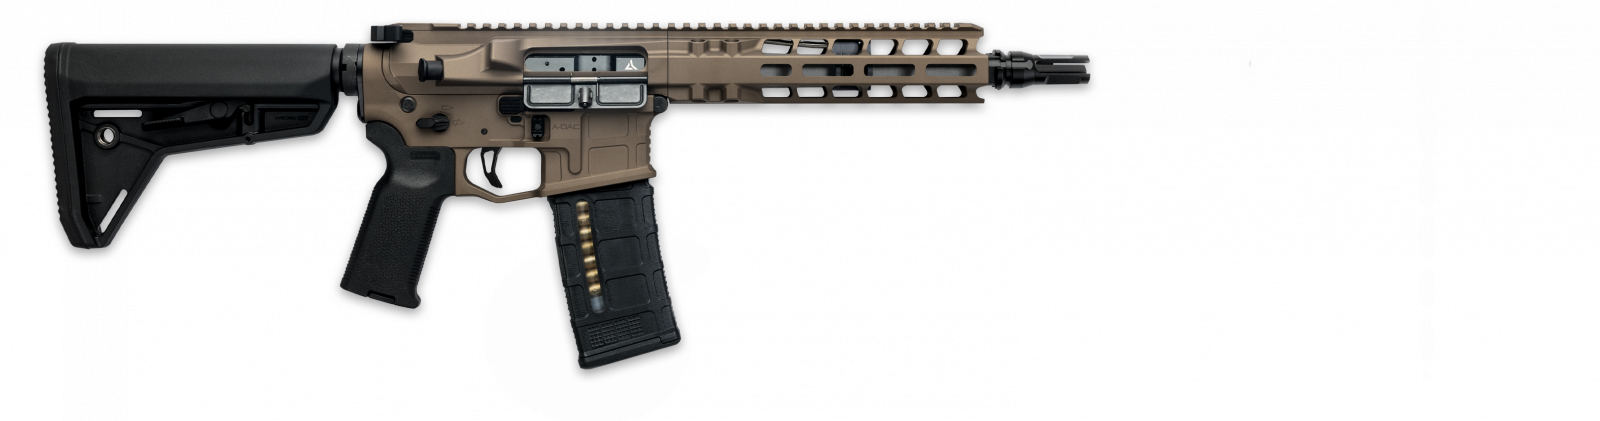 Radian pistole samonabíjecí Model 1 - 9, .300 AAC Blackout, hnědá